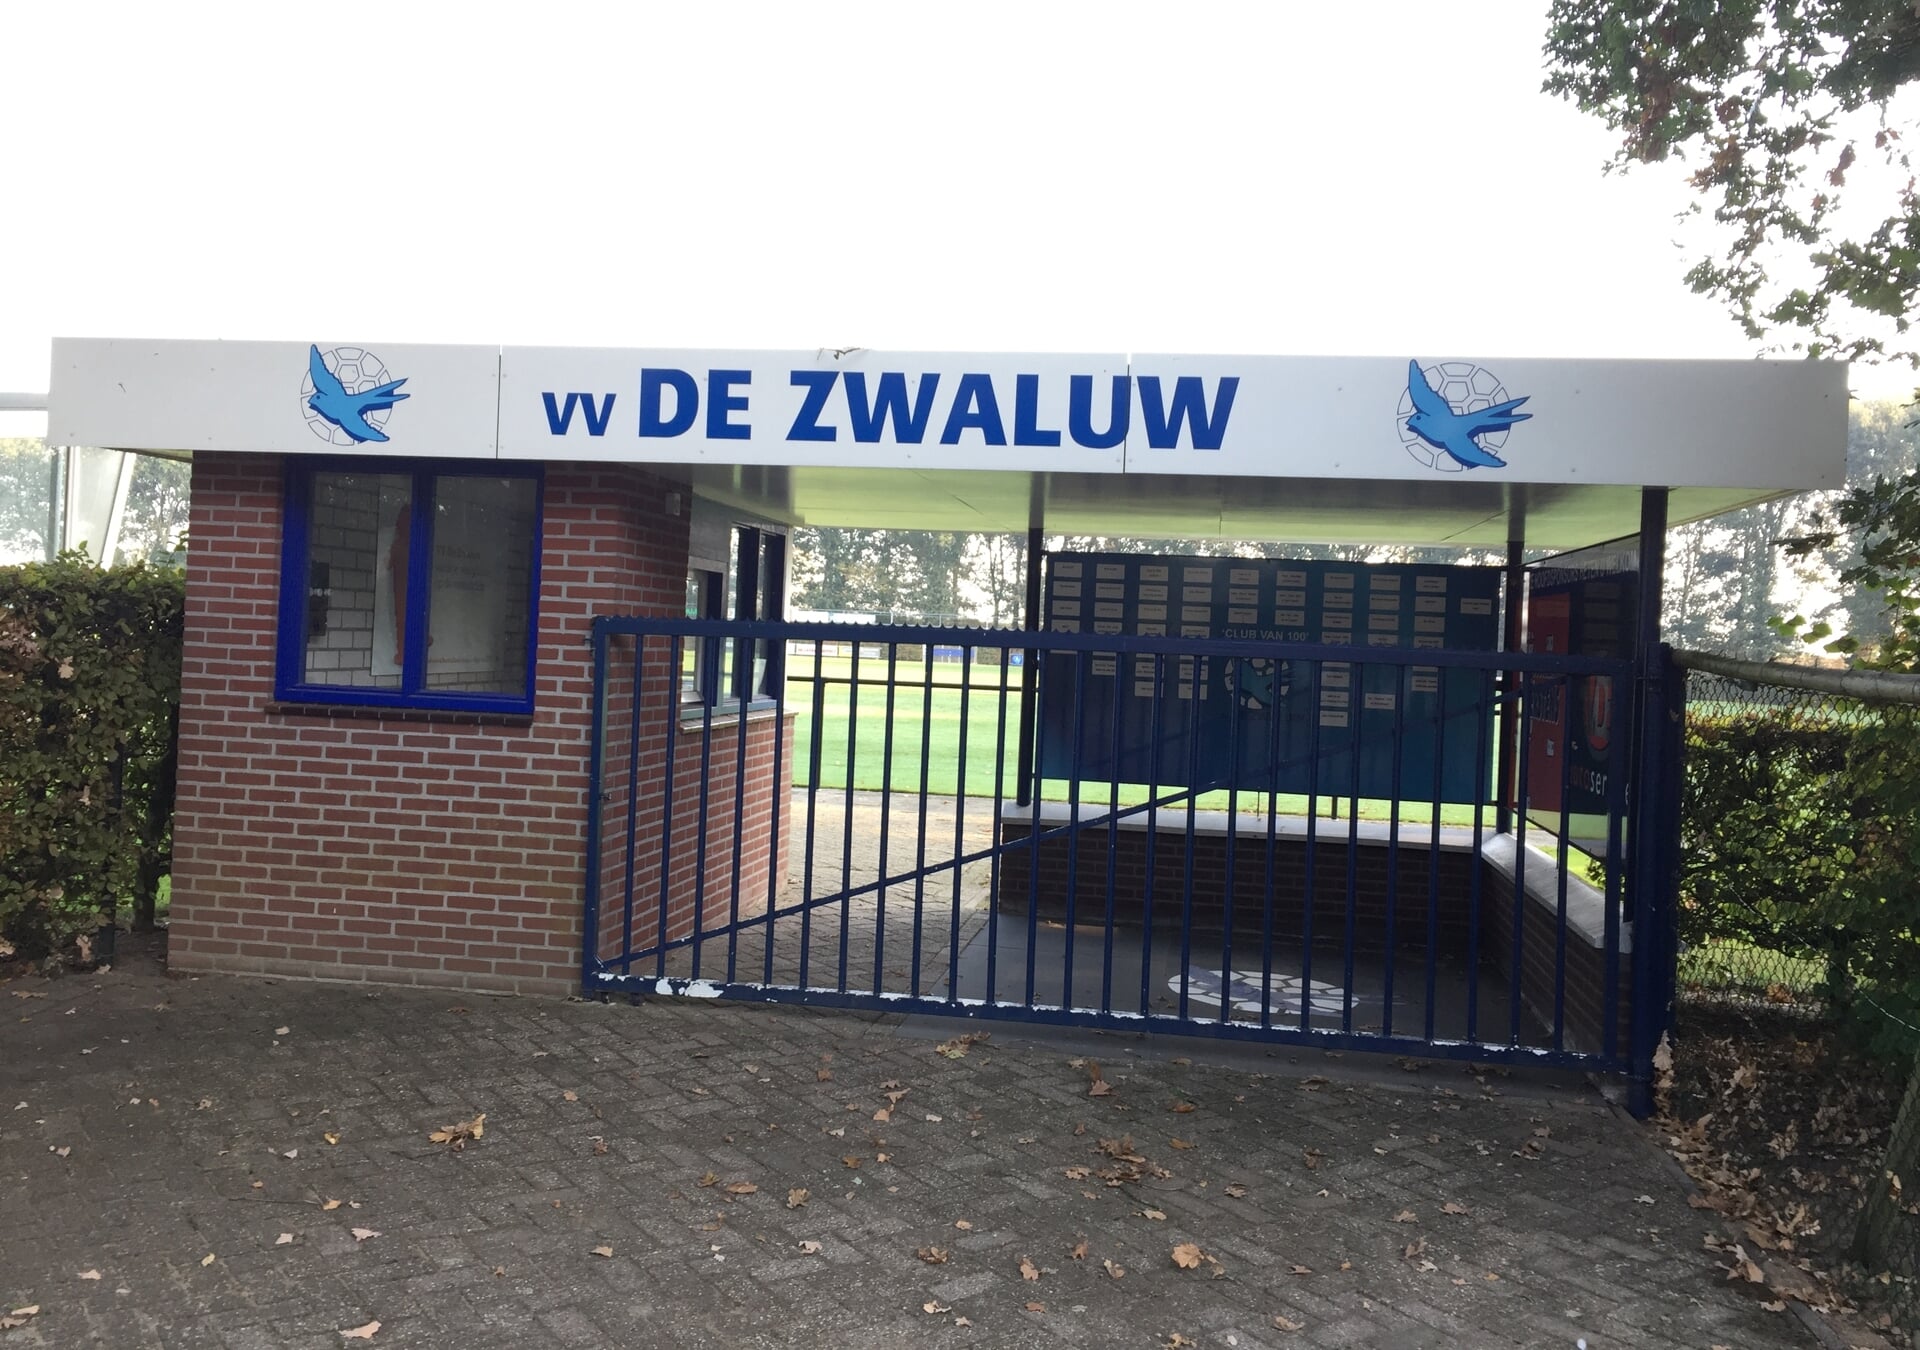 Voetbalvereniging De Zwaluw heeft onlangs 44.500 euro ontvangen voor verbouwing van de kleedlokalen.